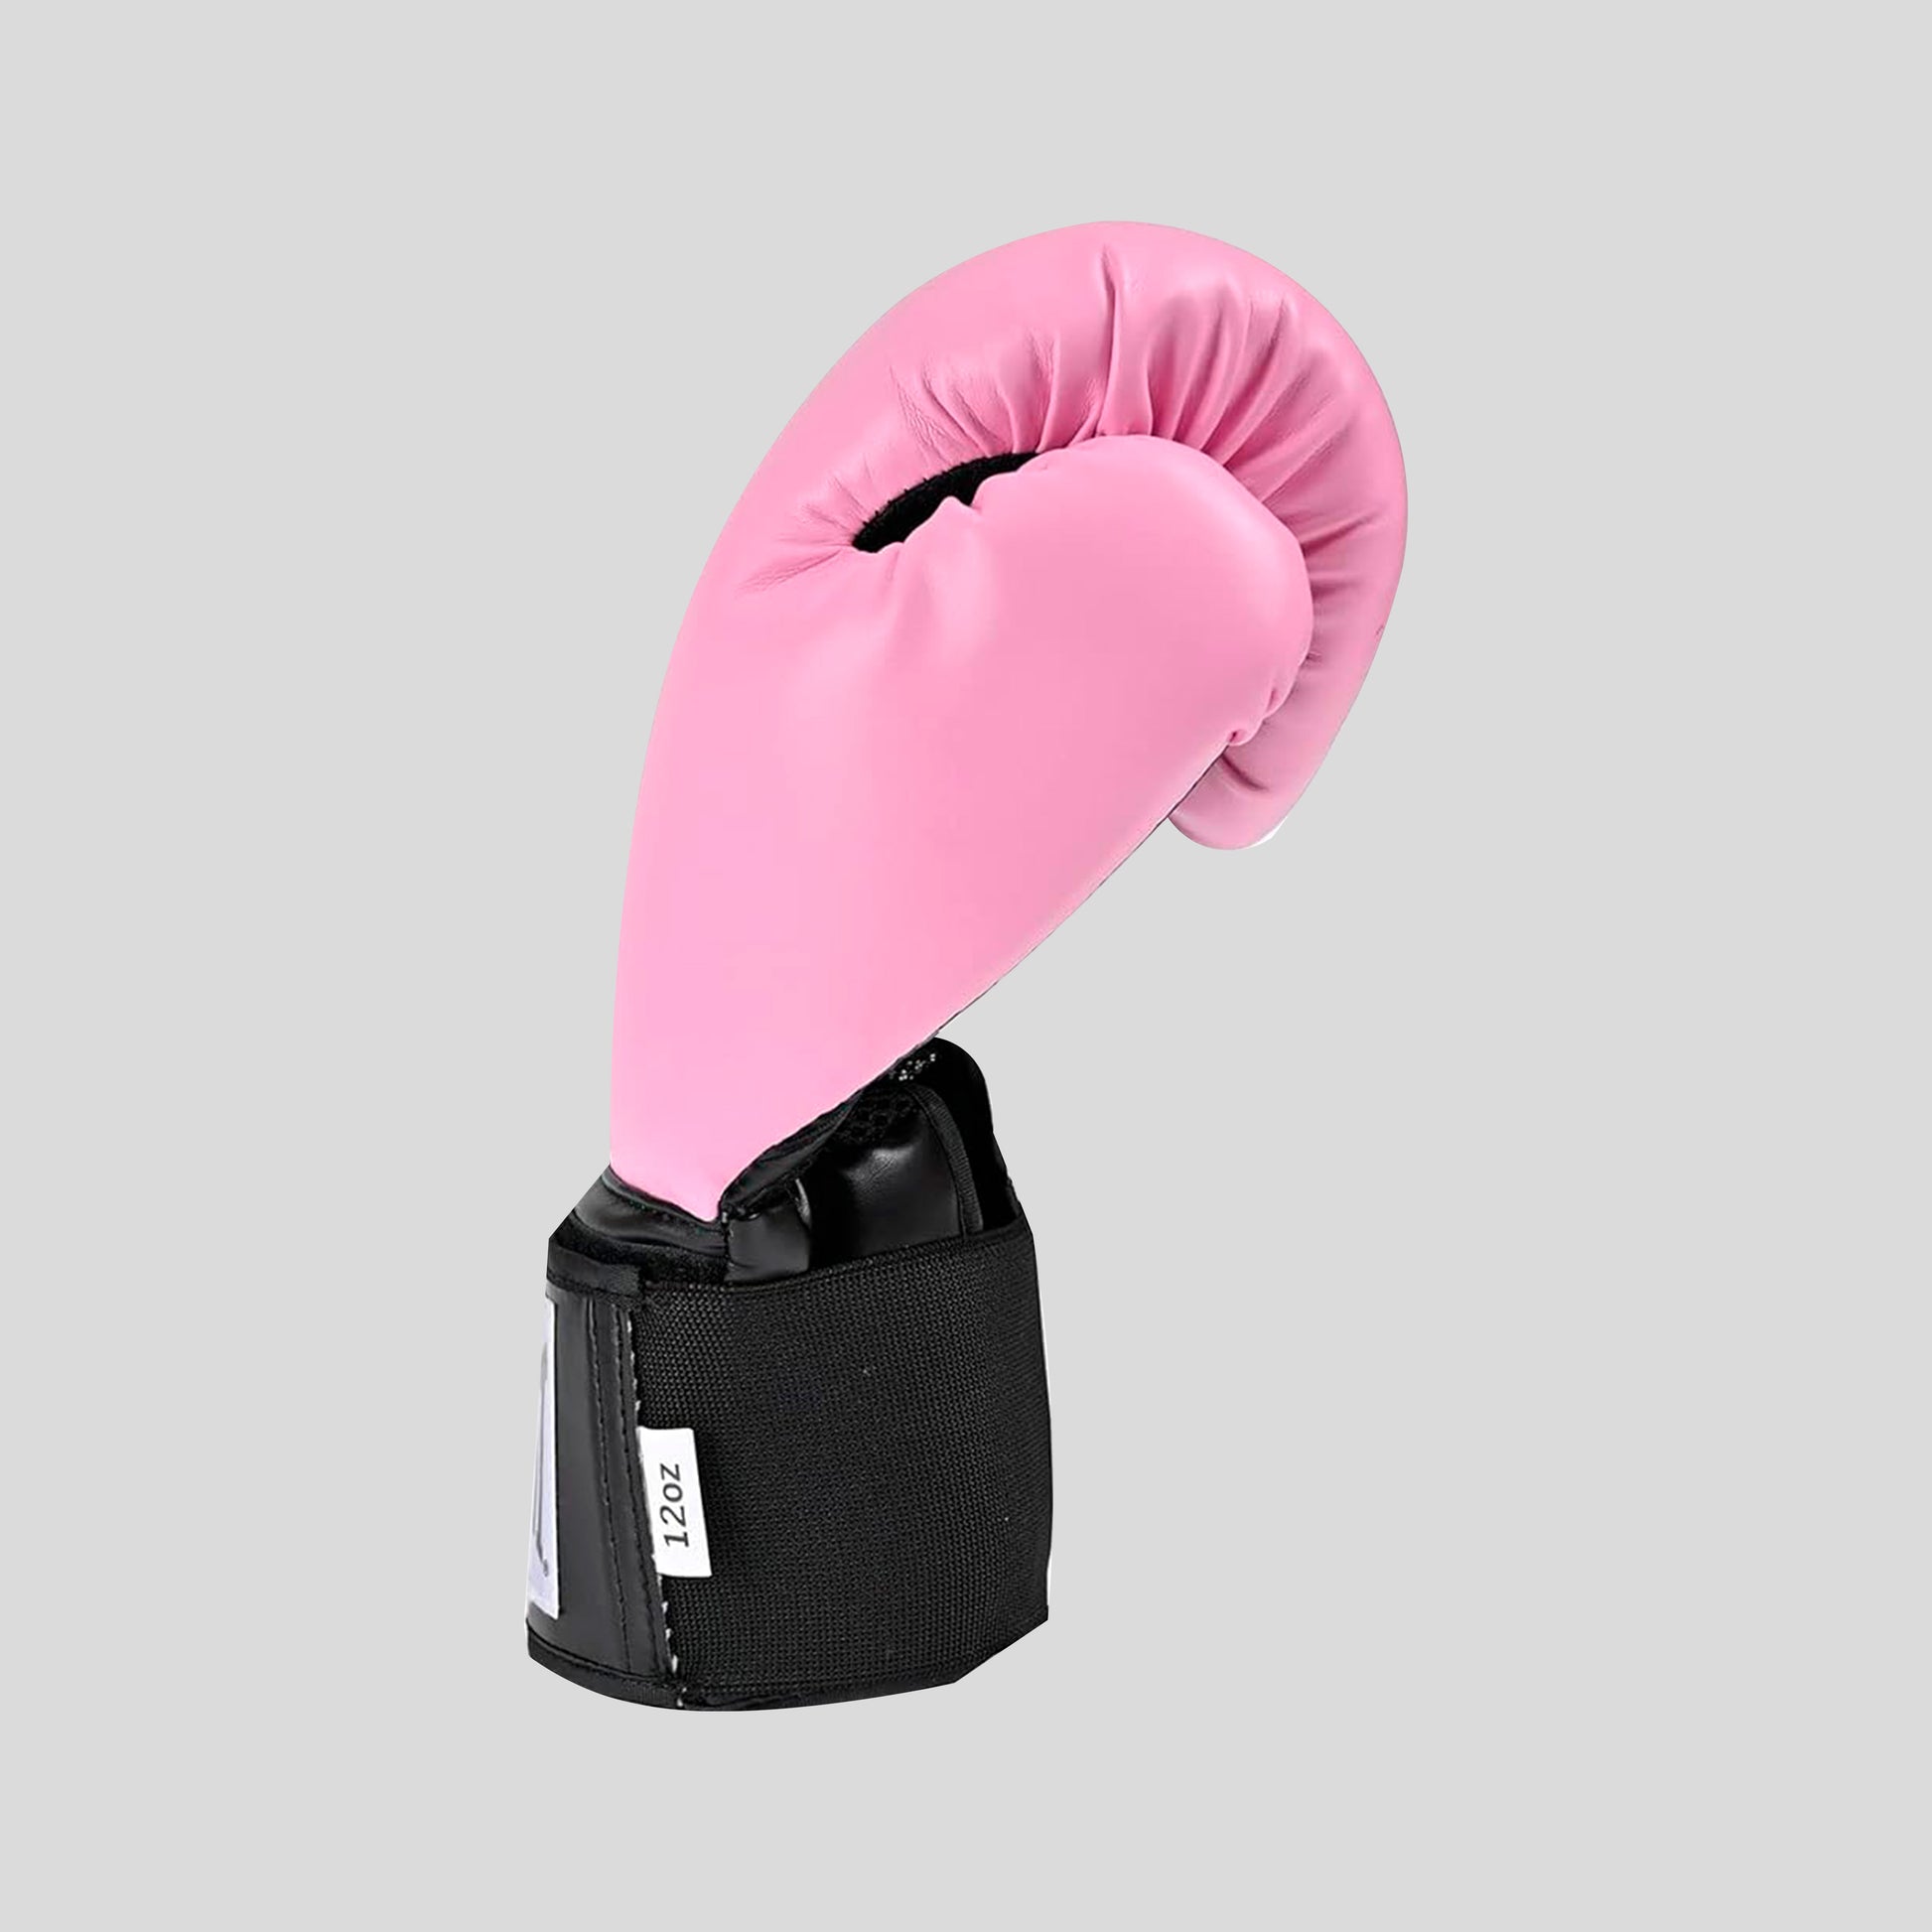 Disfraz boxeadora con guantes rosa mujer